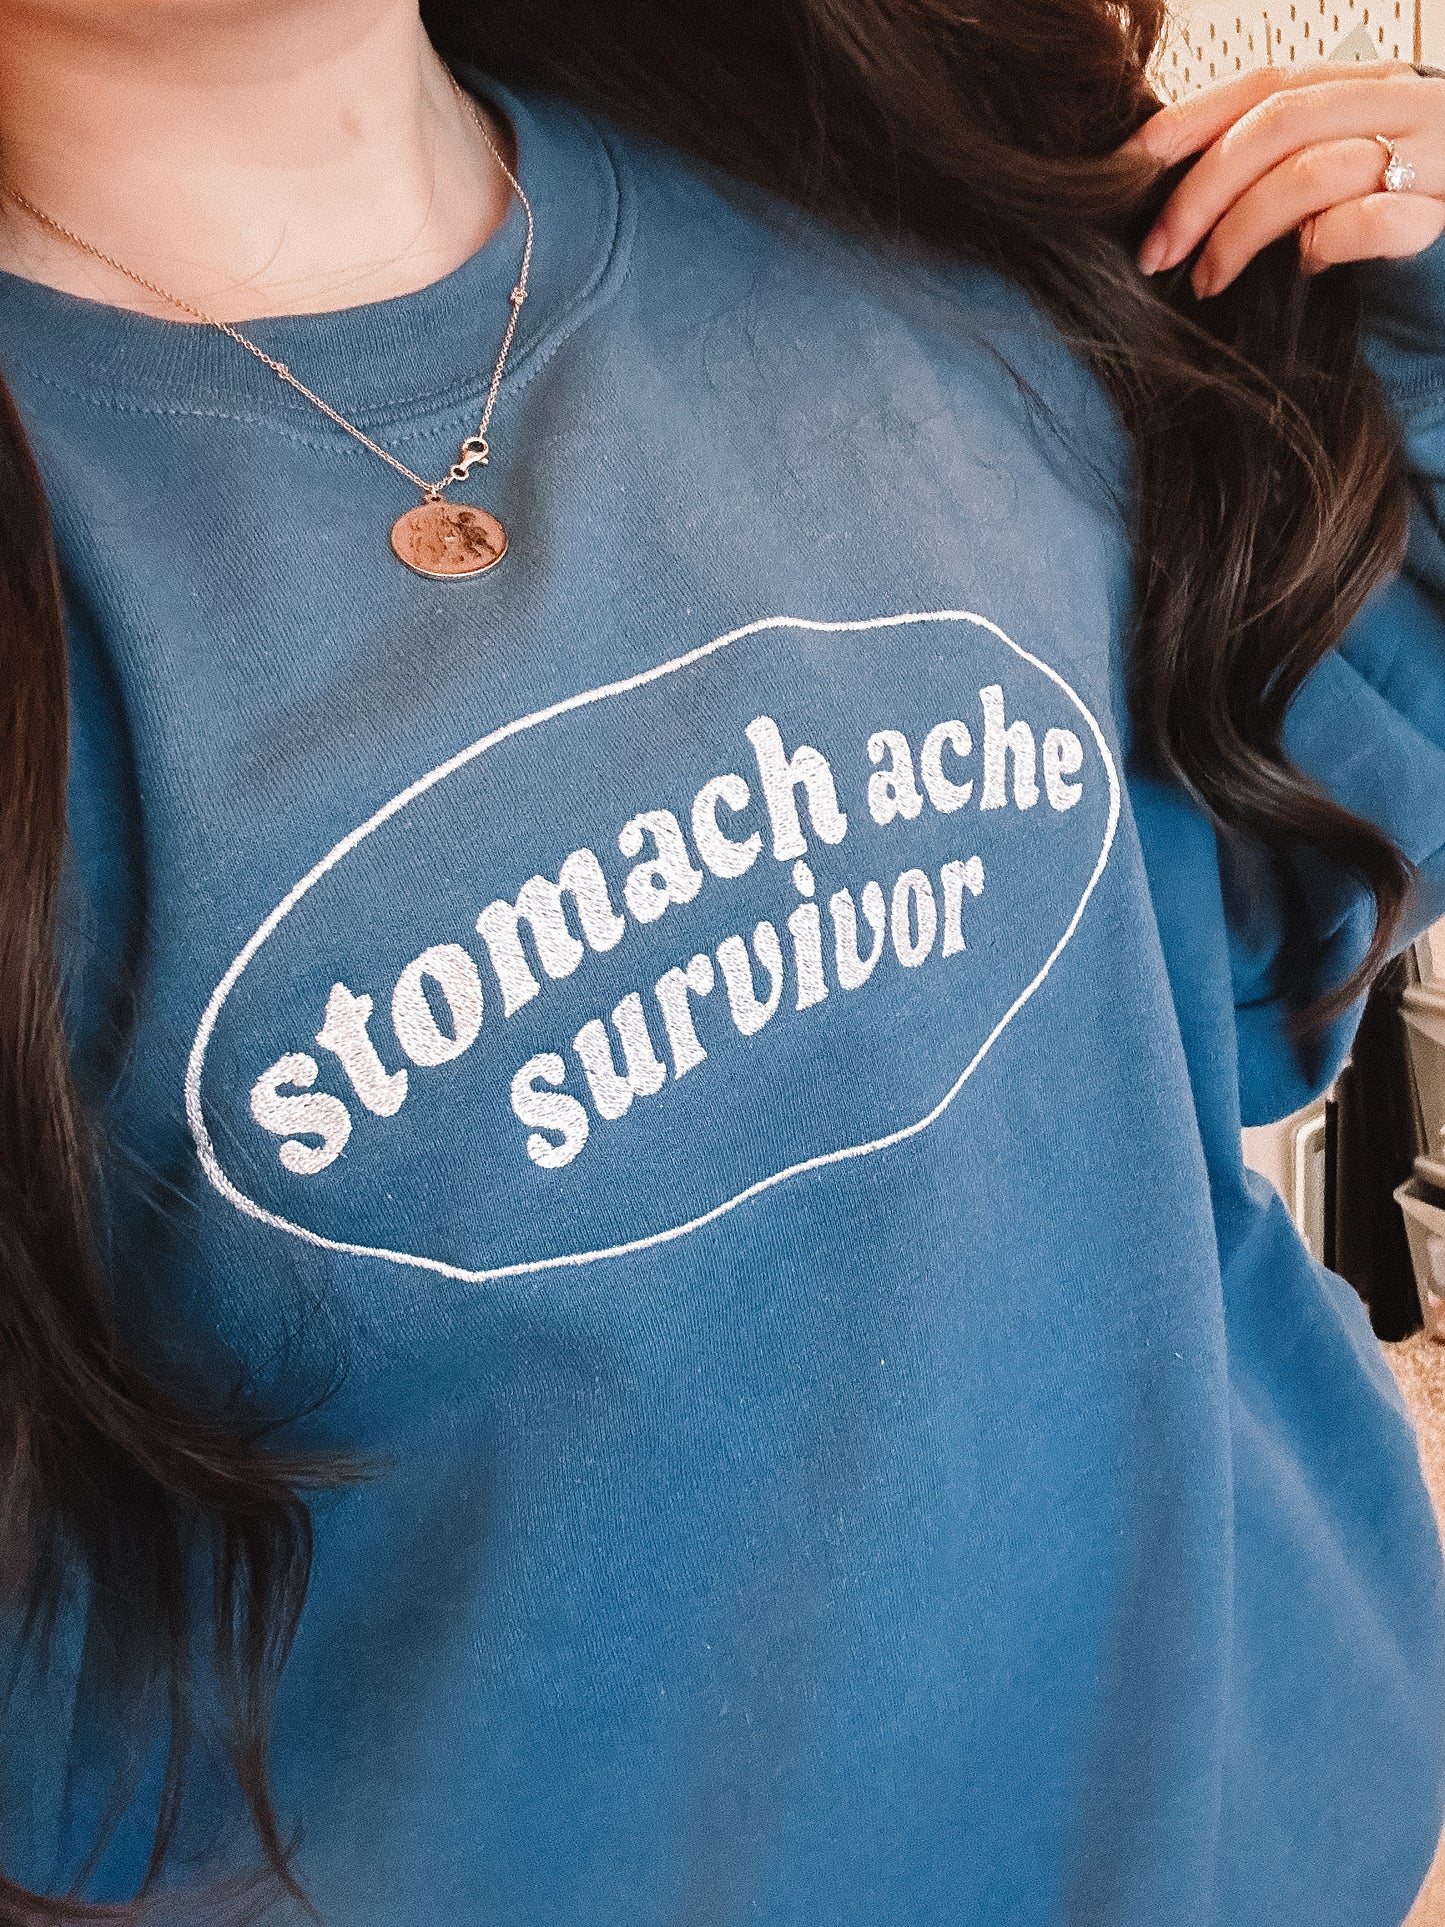 Stomach Ache Survivor crewneck sweatshirt